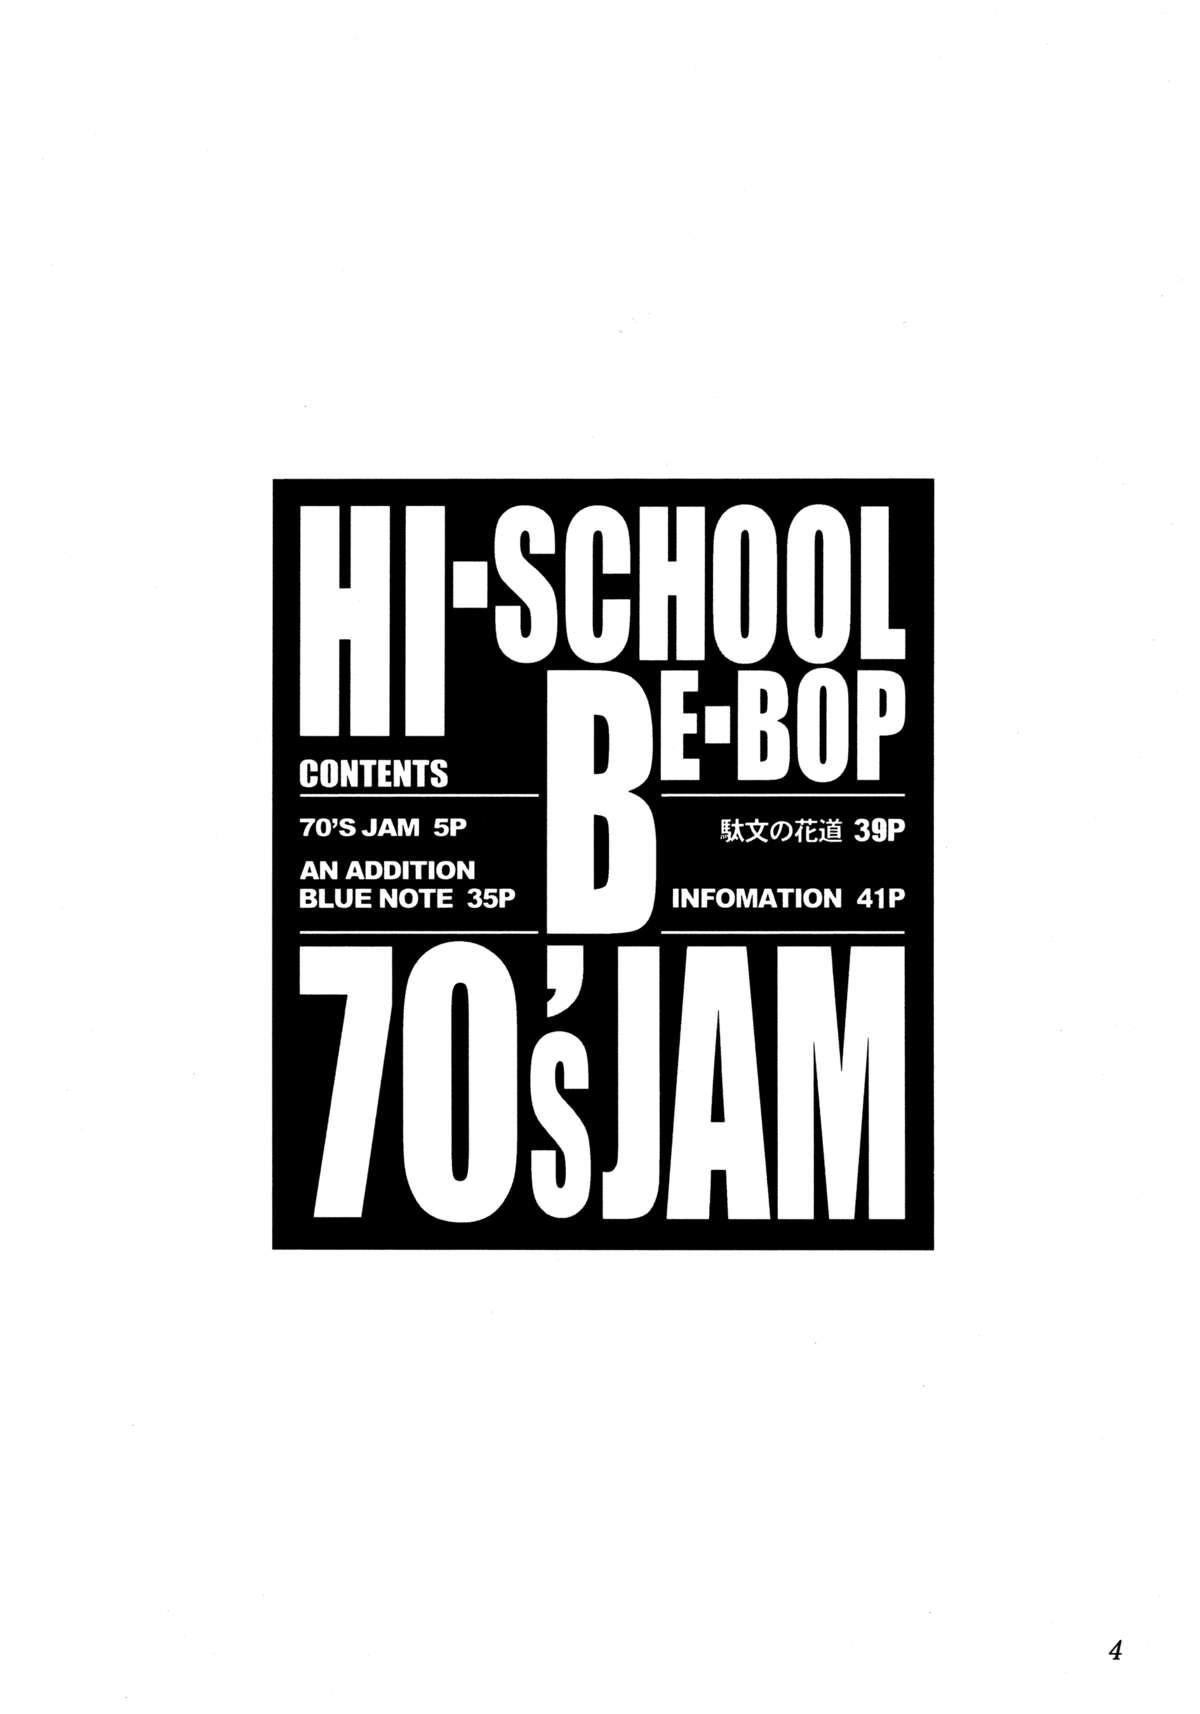 HI-SCHOOL BEBOP 70'S JAM 2